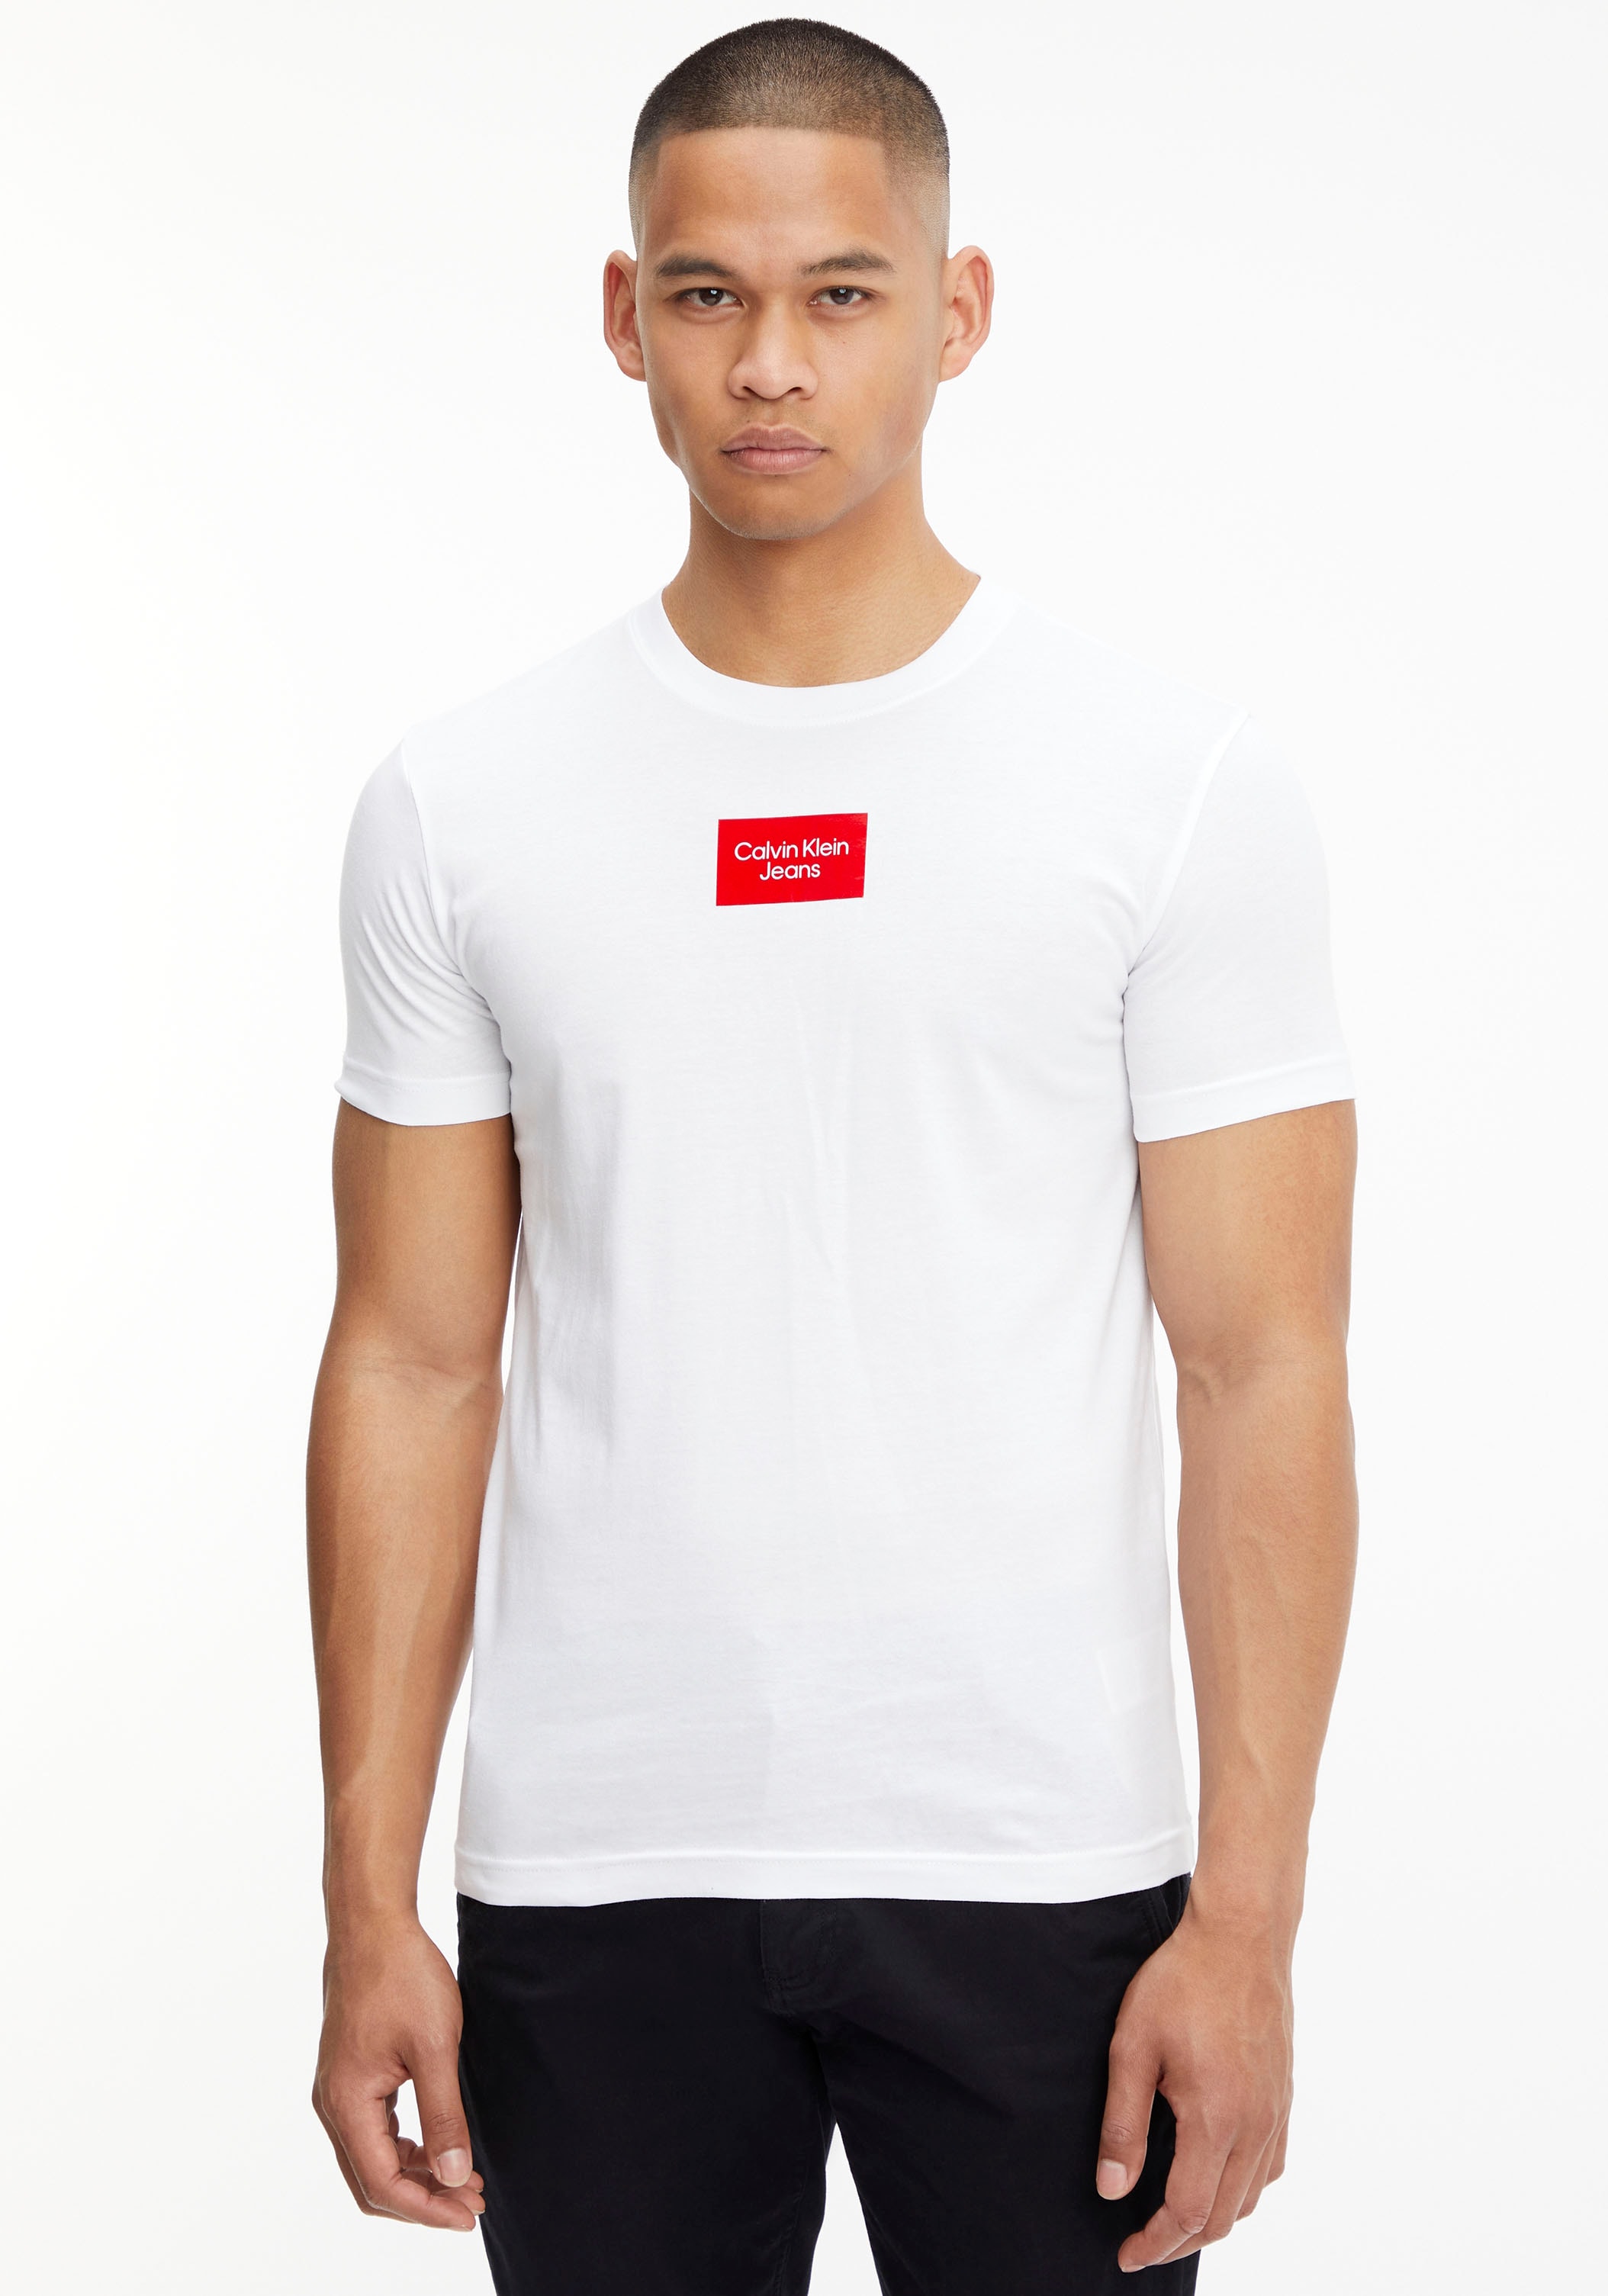 CENTER mit TEE«, online BOX Jeans Logodruck T-Shirt Calvin Klein kaufen »SMALL